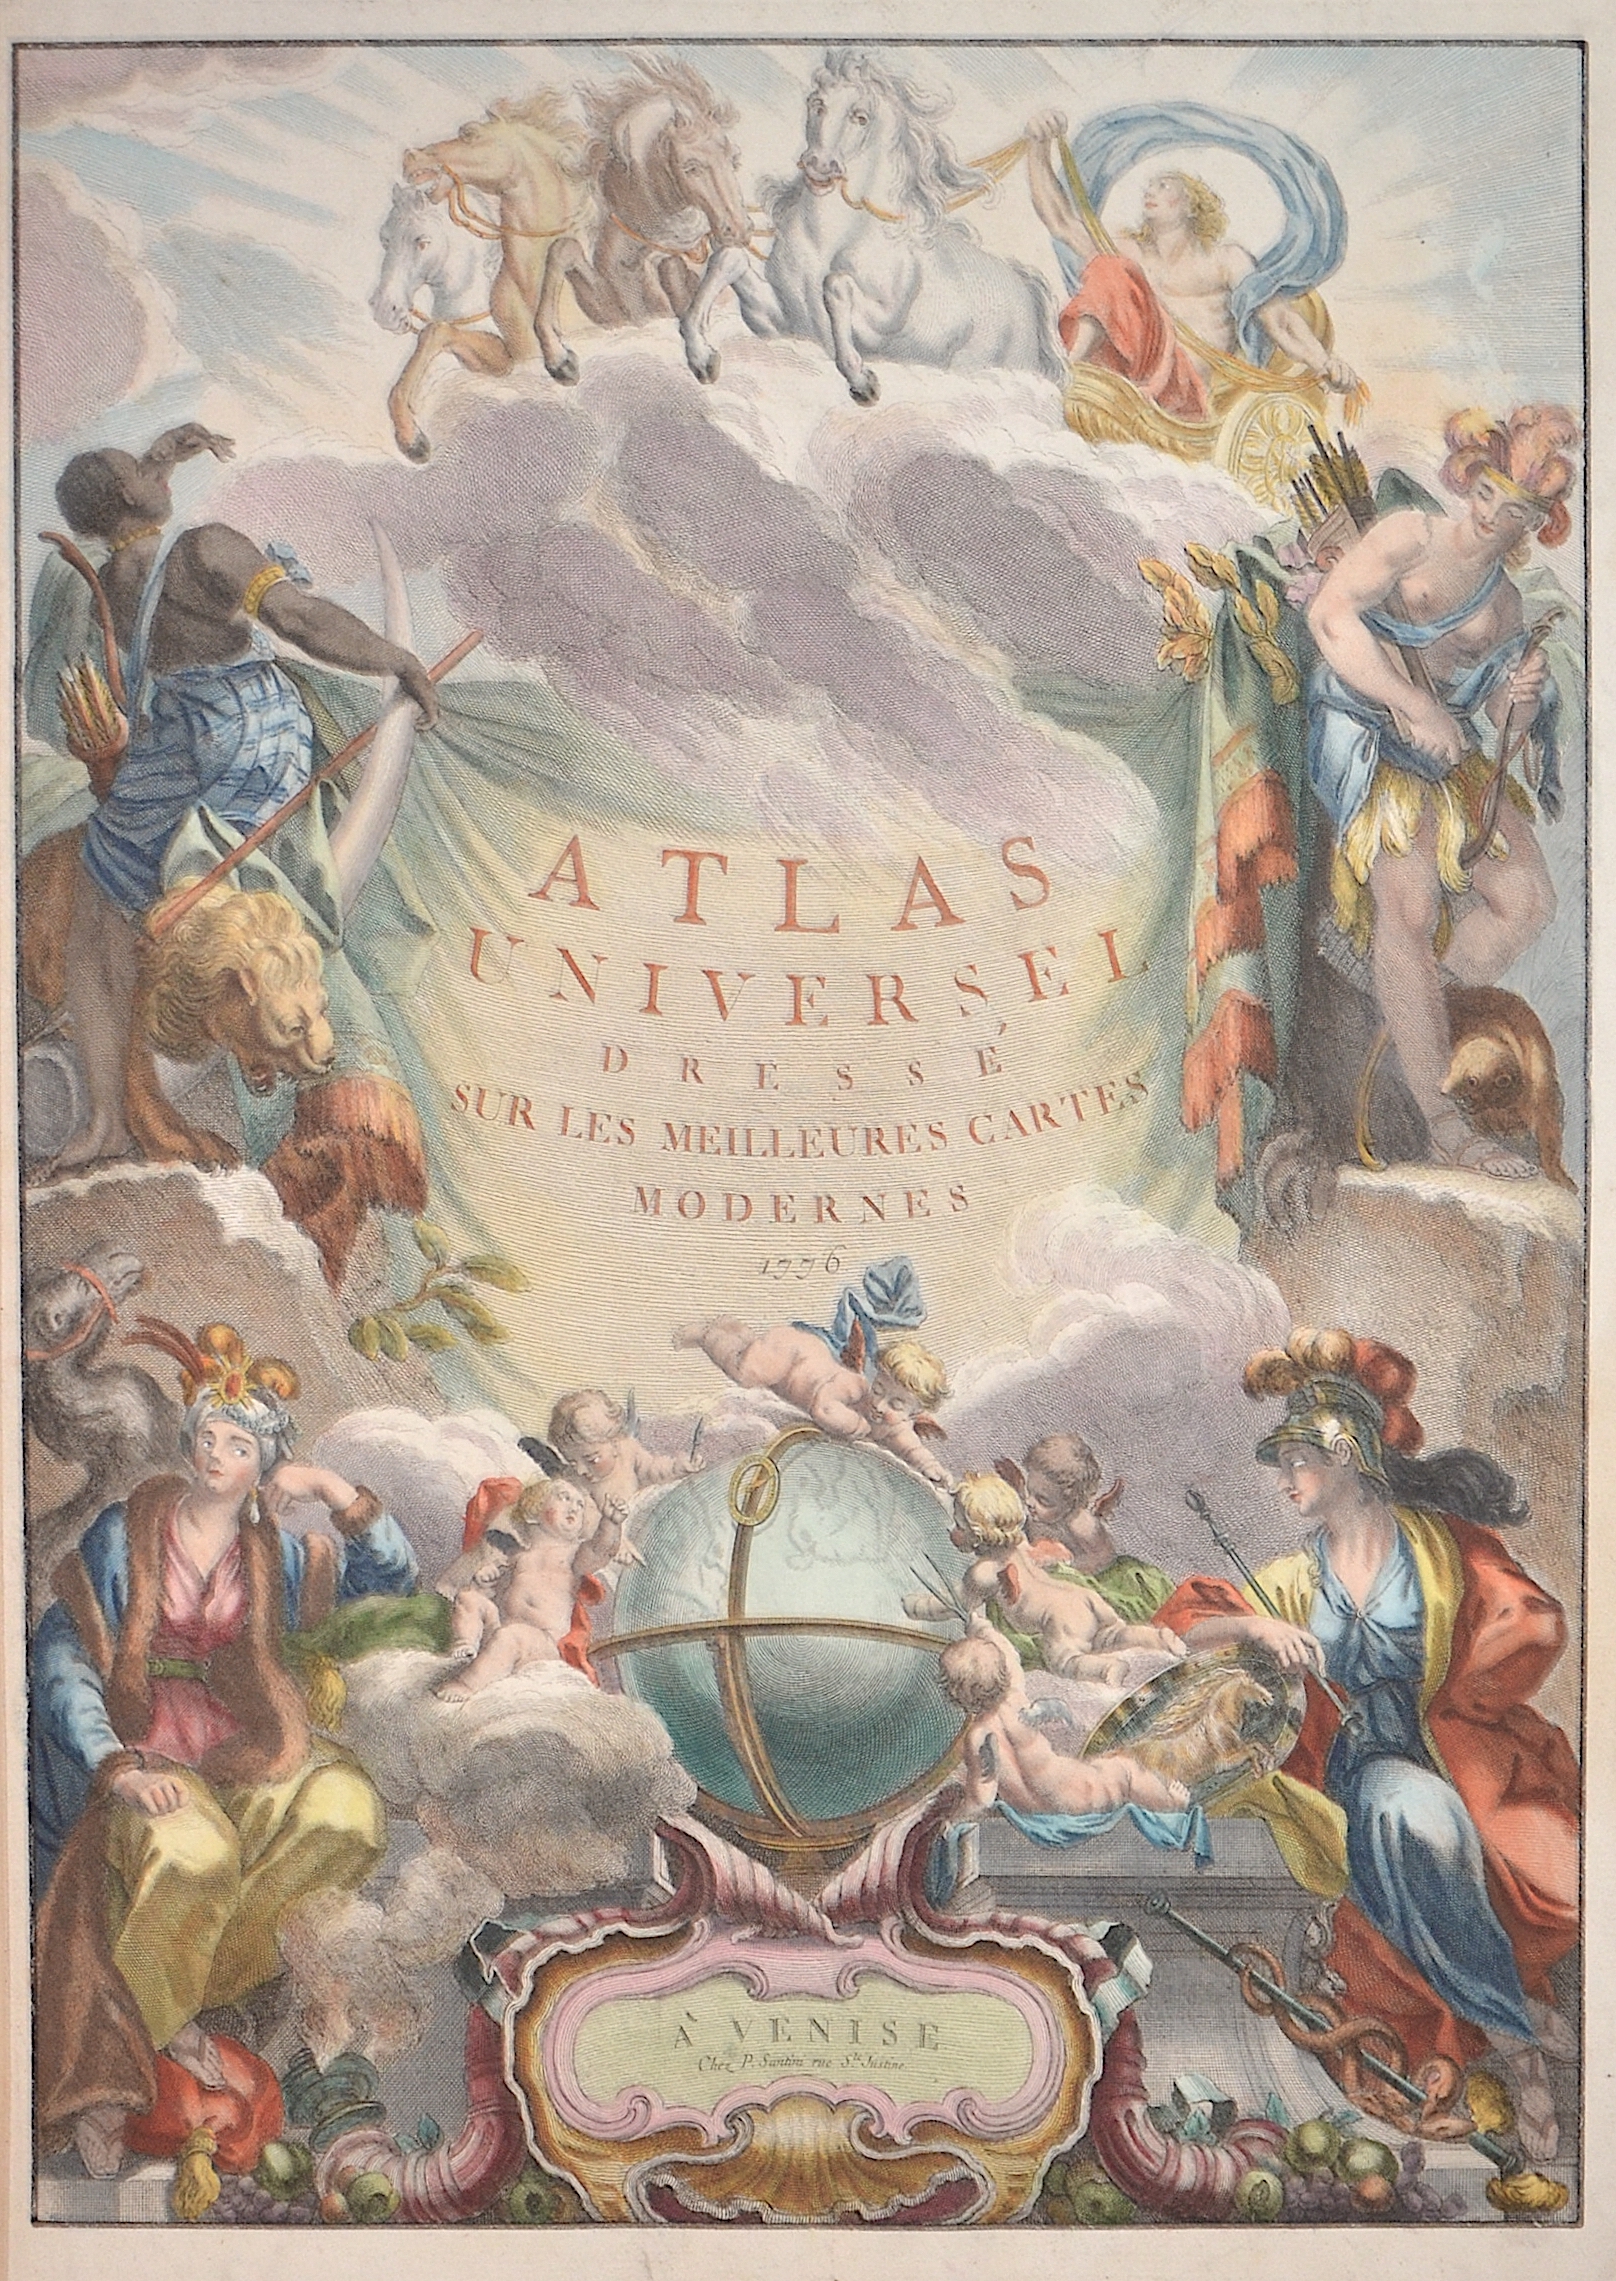 Santini  Atlas Universel dresse sur les Meilleures Cartes Modernes 1776.